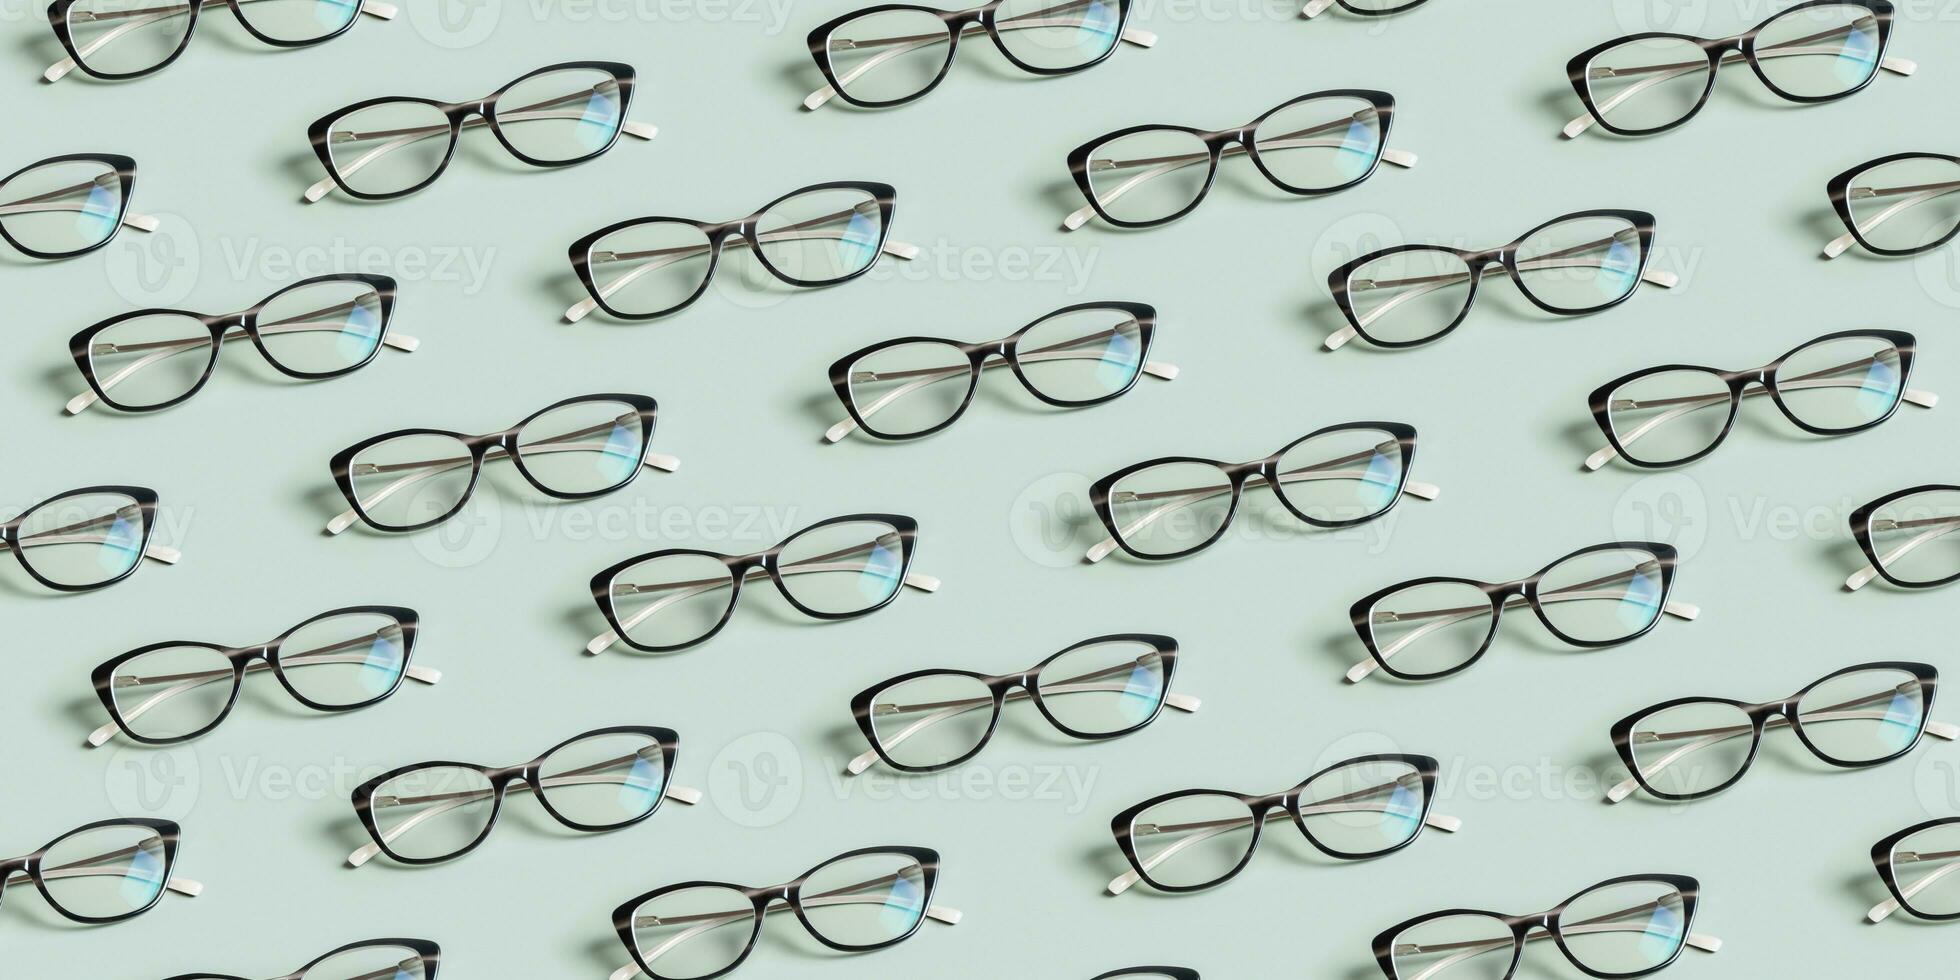 glasögon för syn på en grön bakgrund. optisk Lagra, syn testa, eleganta glasögon begrepp. baner med mönster foto